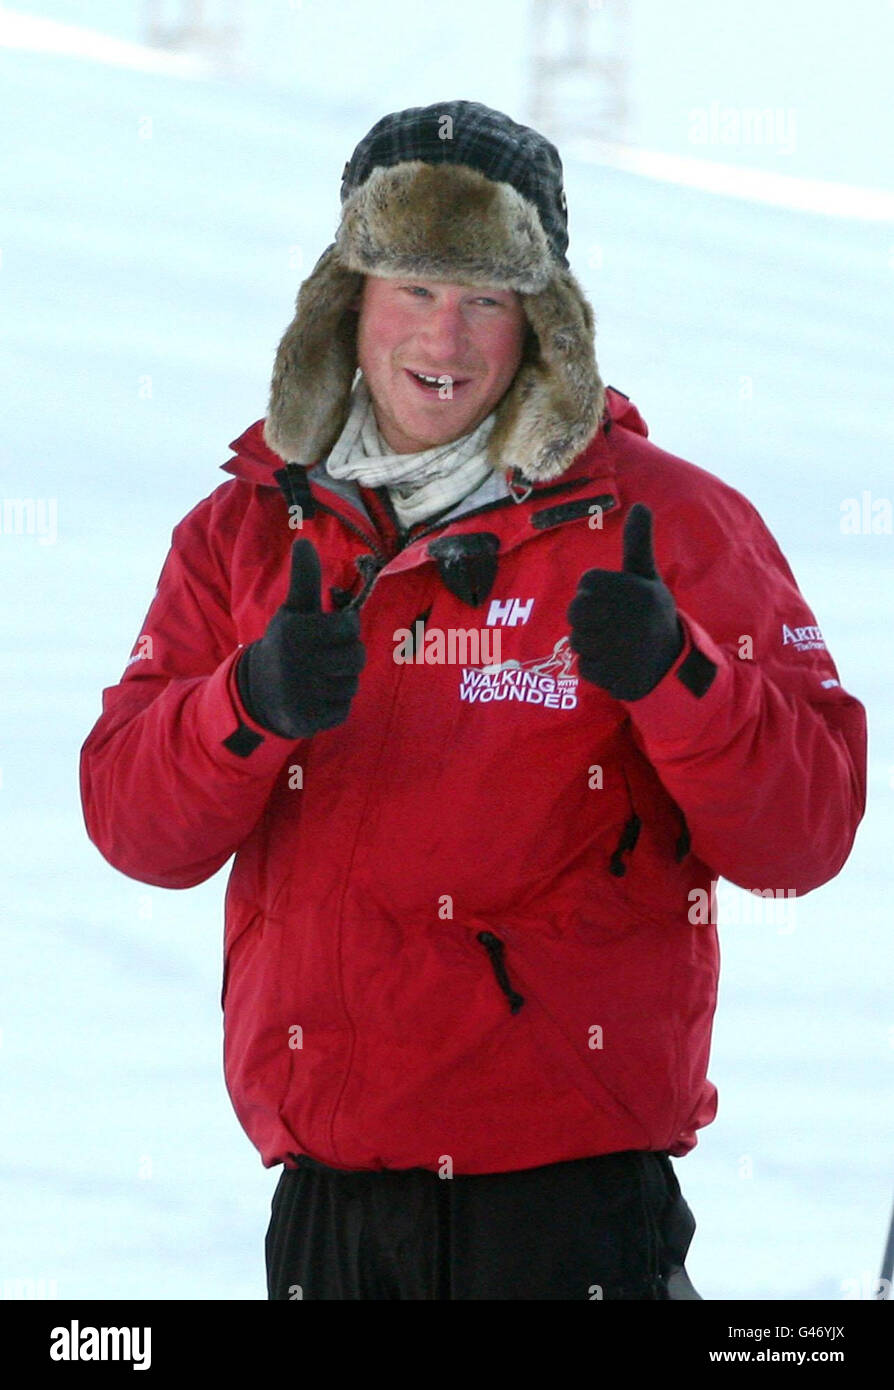 Le prince Harry rejoint la marche avec l'équipe blessée sur l'île de Spitsbergen, pour s'entraîner avant qu'ils commencent leur randonnée caritative vers le pôle Nord. Banque D'Images